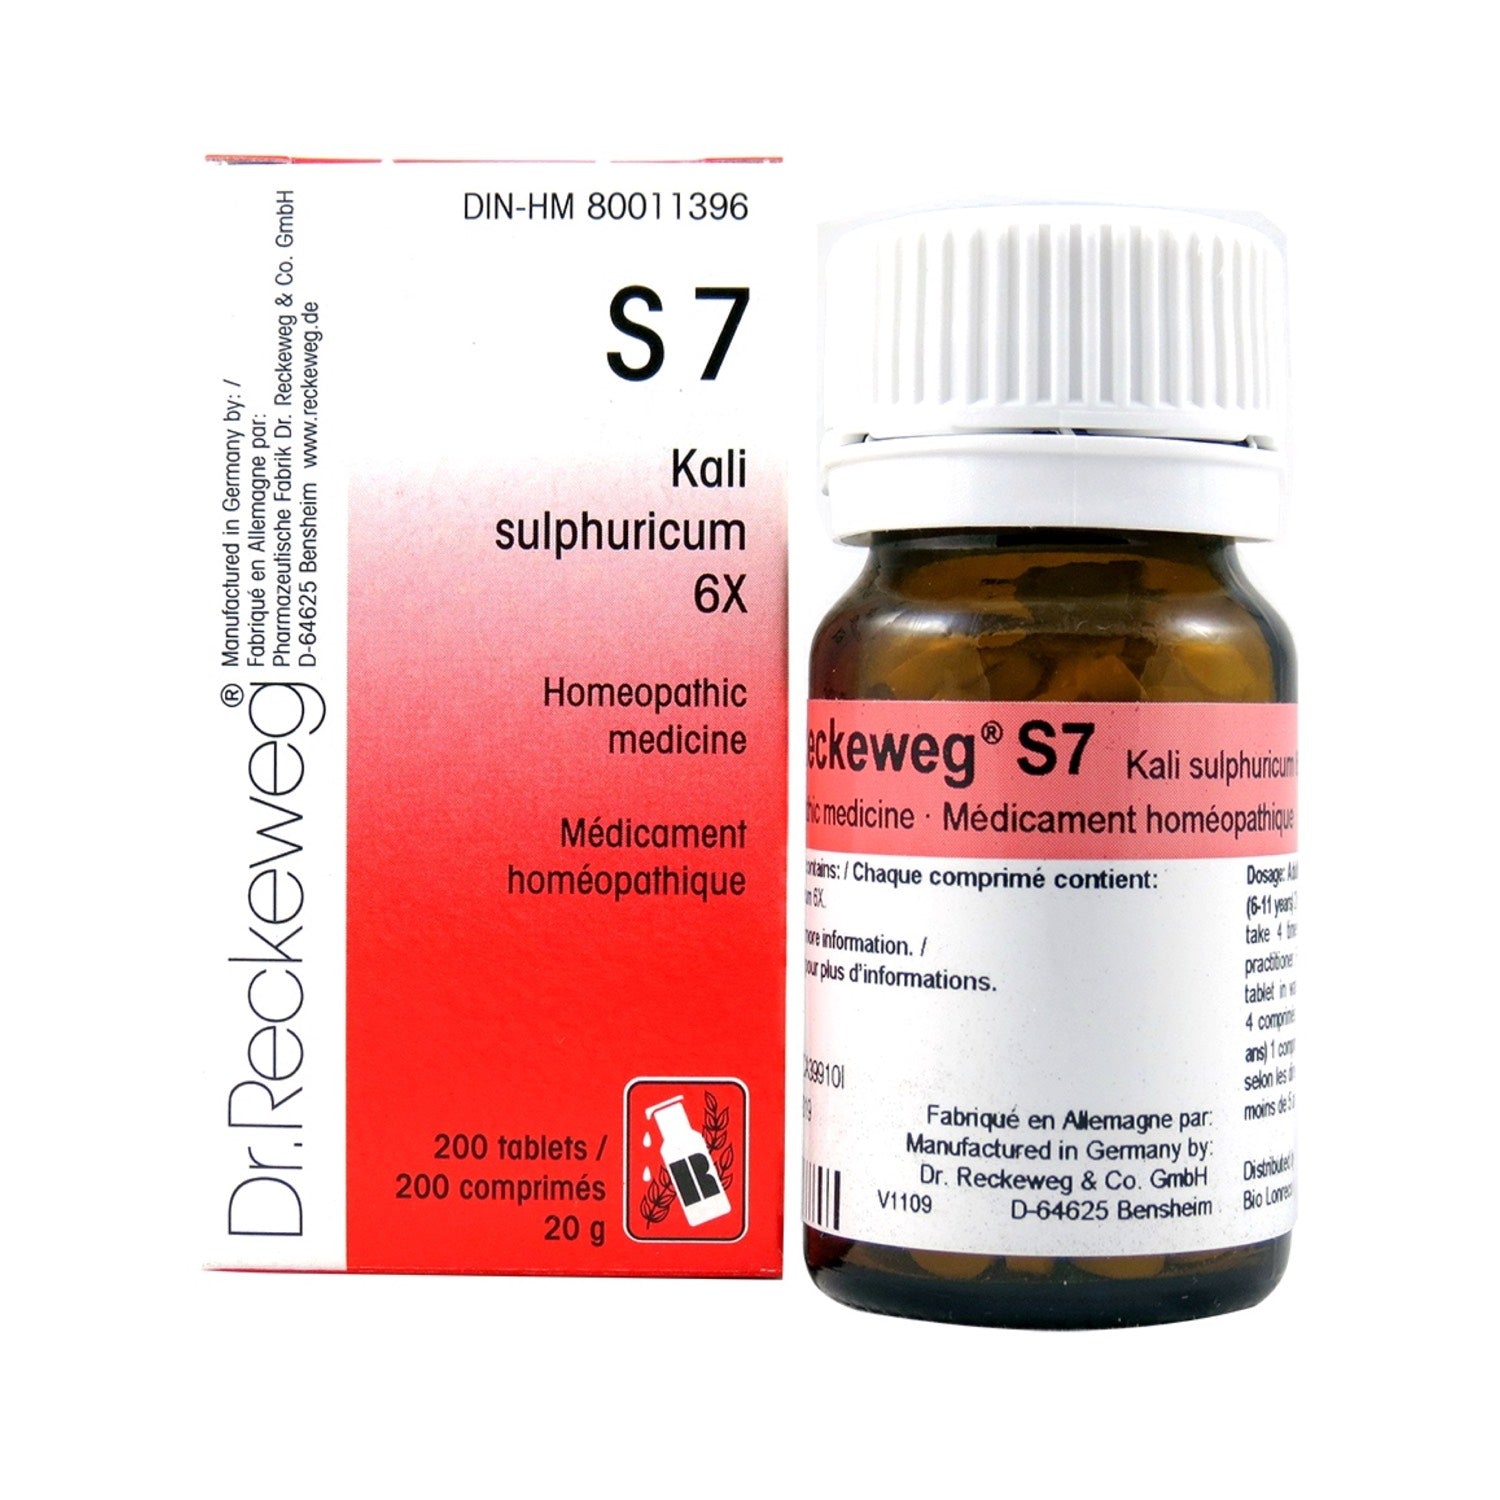 S7 Kali sulphuricum Homeopathic medicine Schuessler salt 6X 200 tablets (20 g) - iwellnessbox